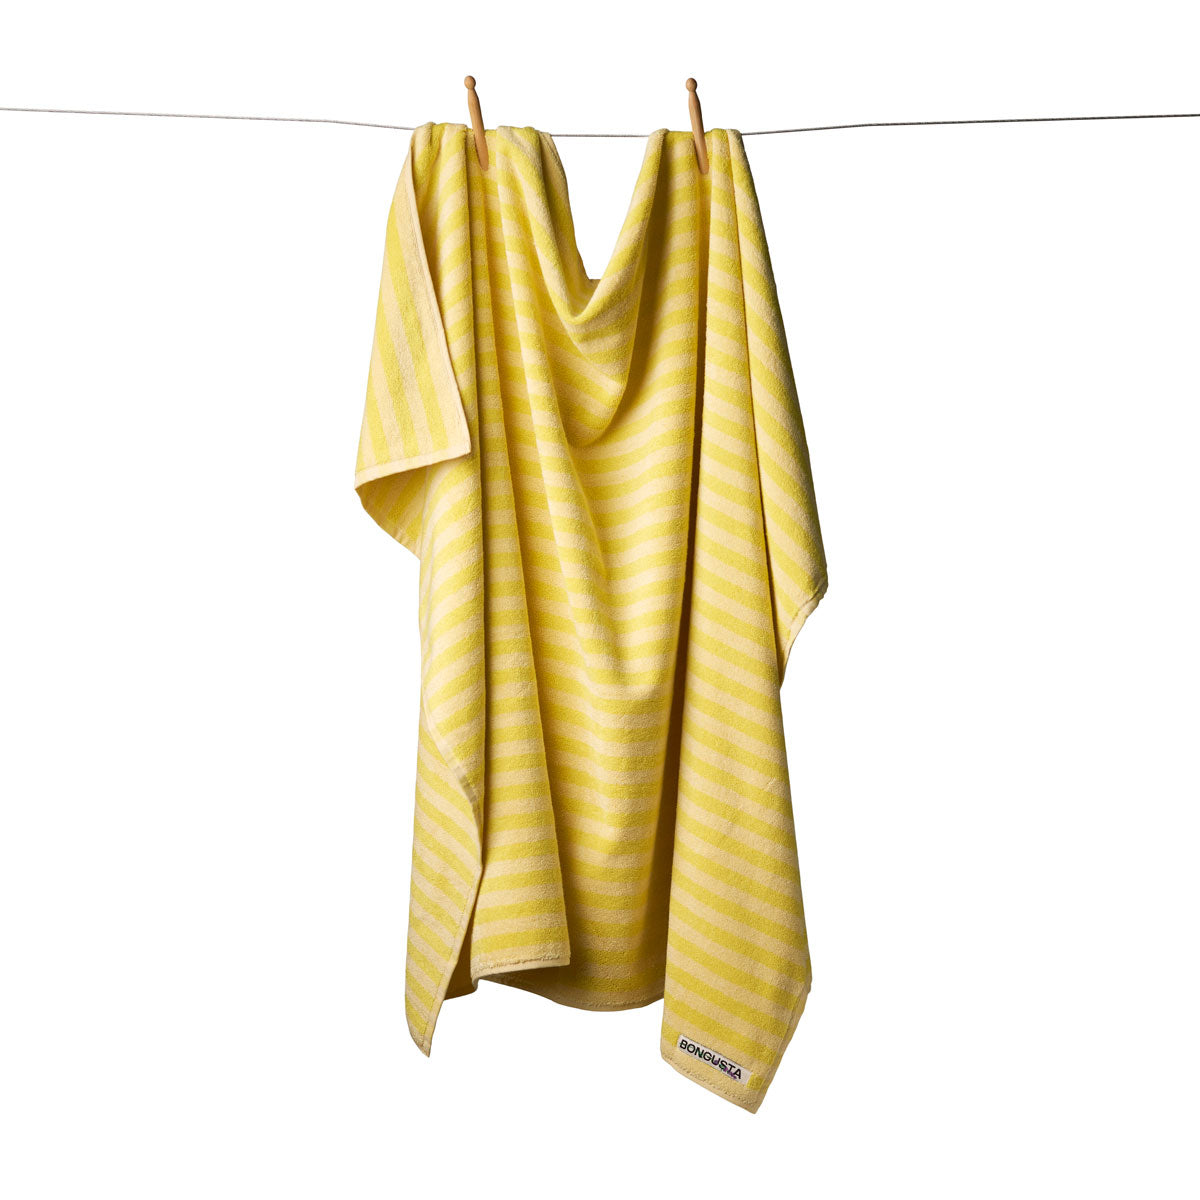 Bongusta Naram Towels - Pristine and Neon Yellow